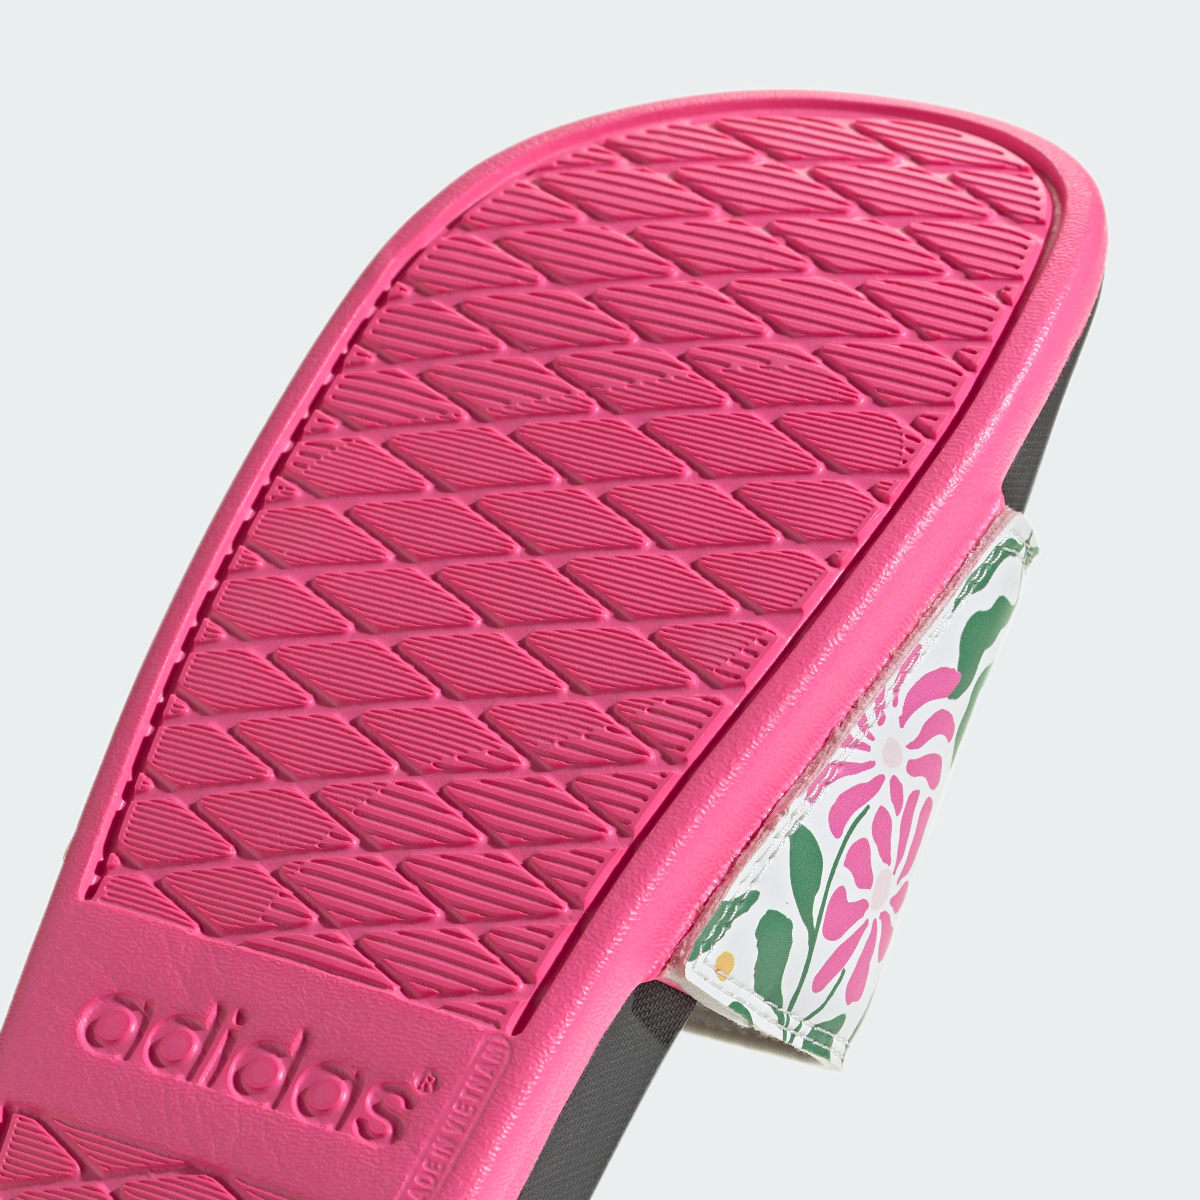 Adidas Sandalias adilette Comfort. 10